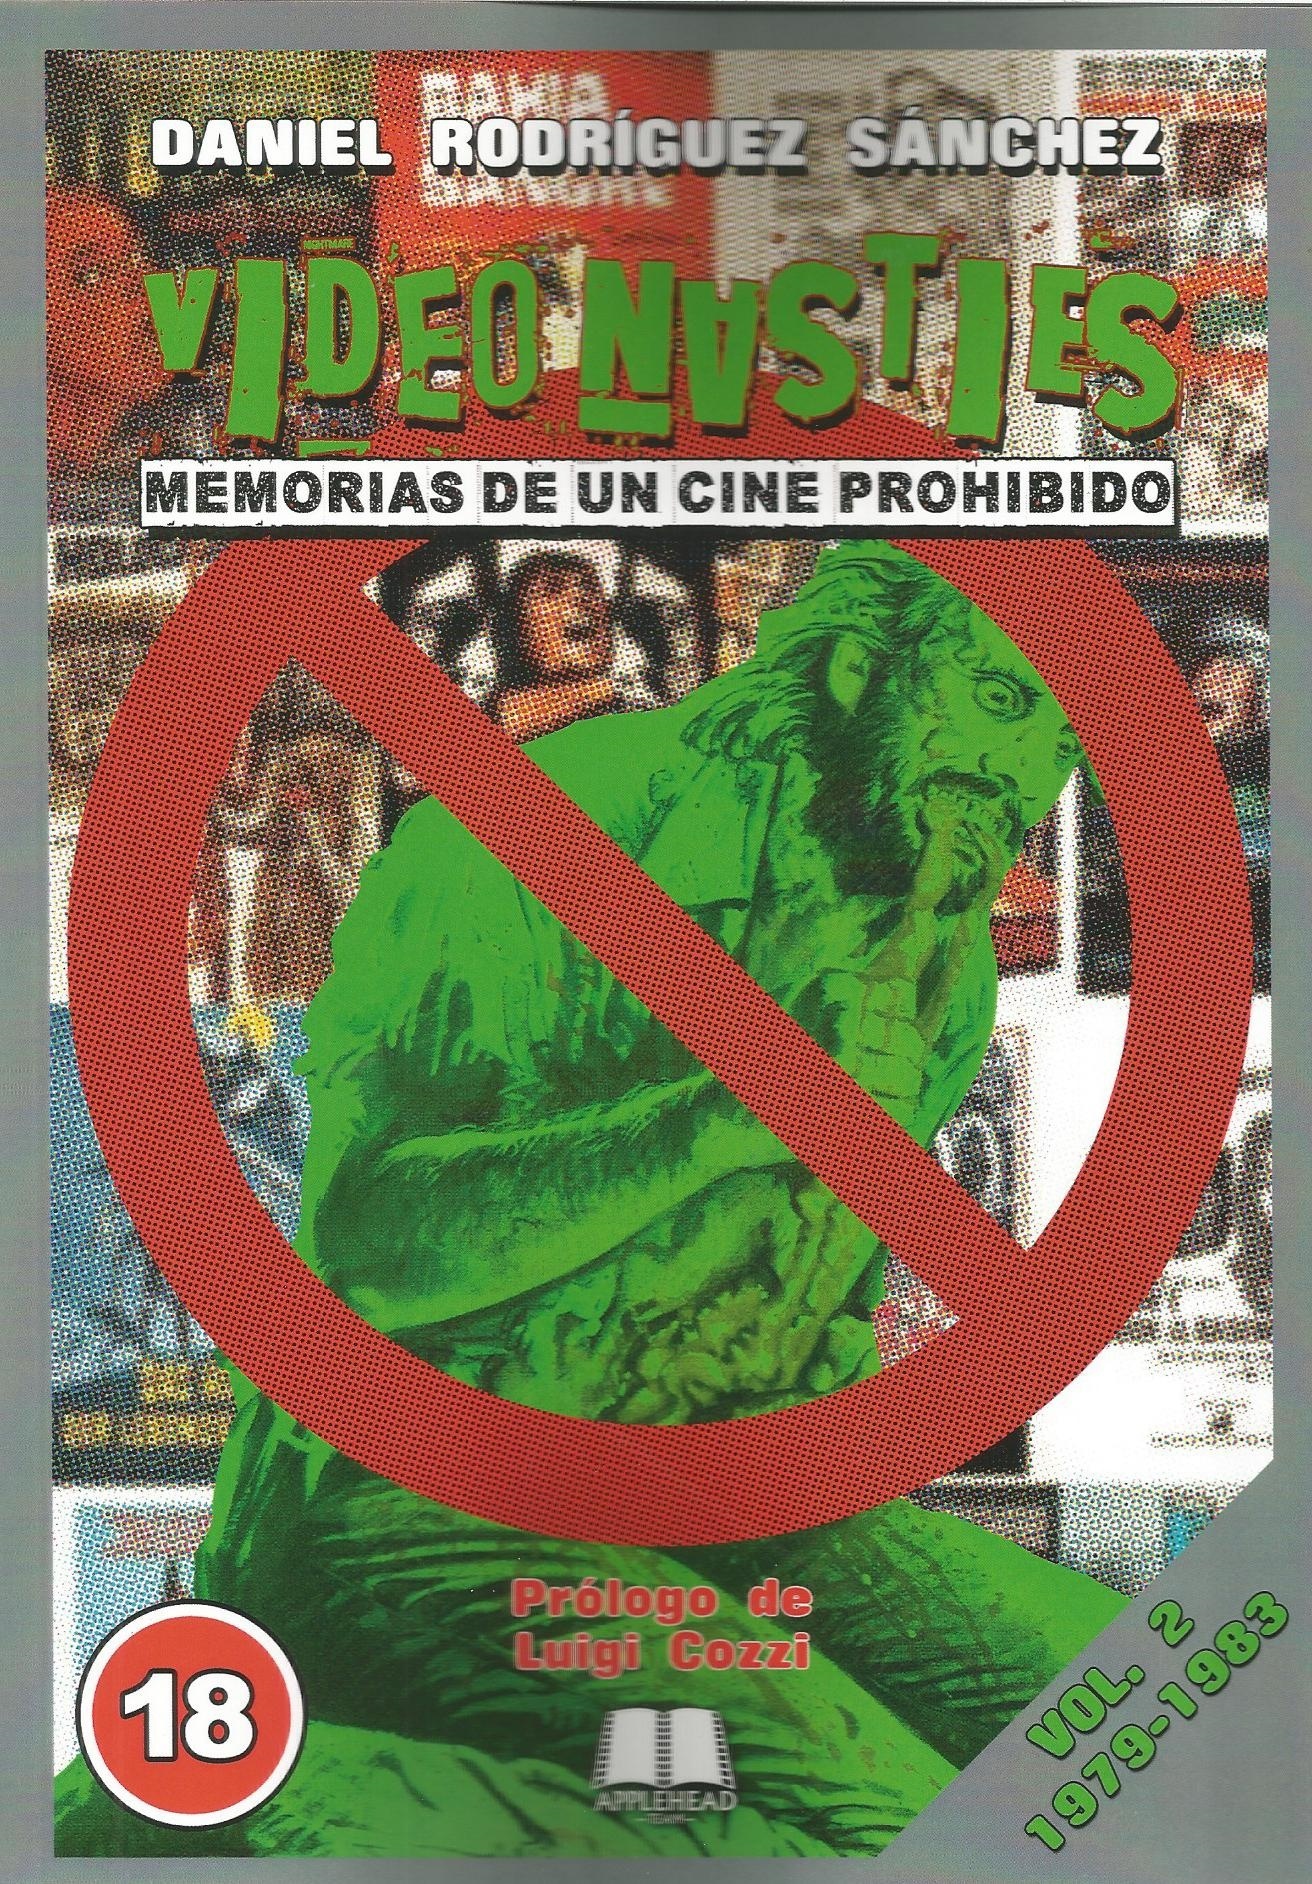 Video Nasties. Memorias de un cine prohibido Vol. 2. 1979-1983